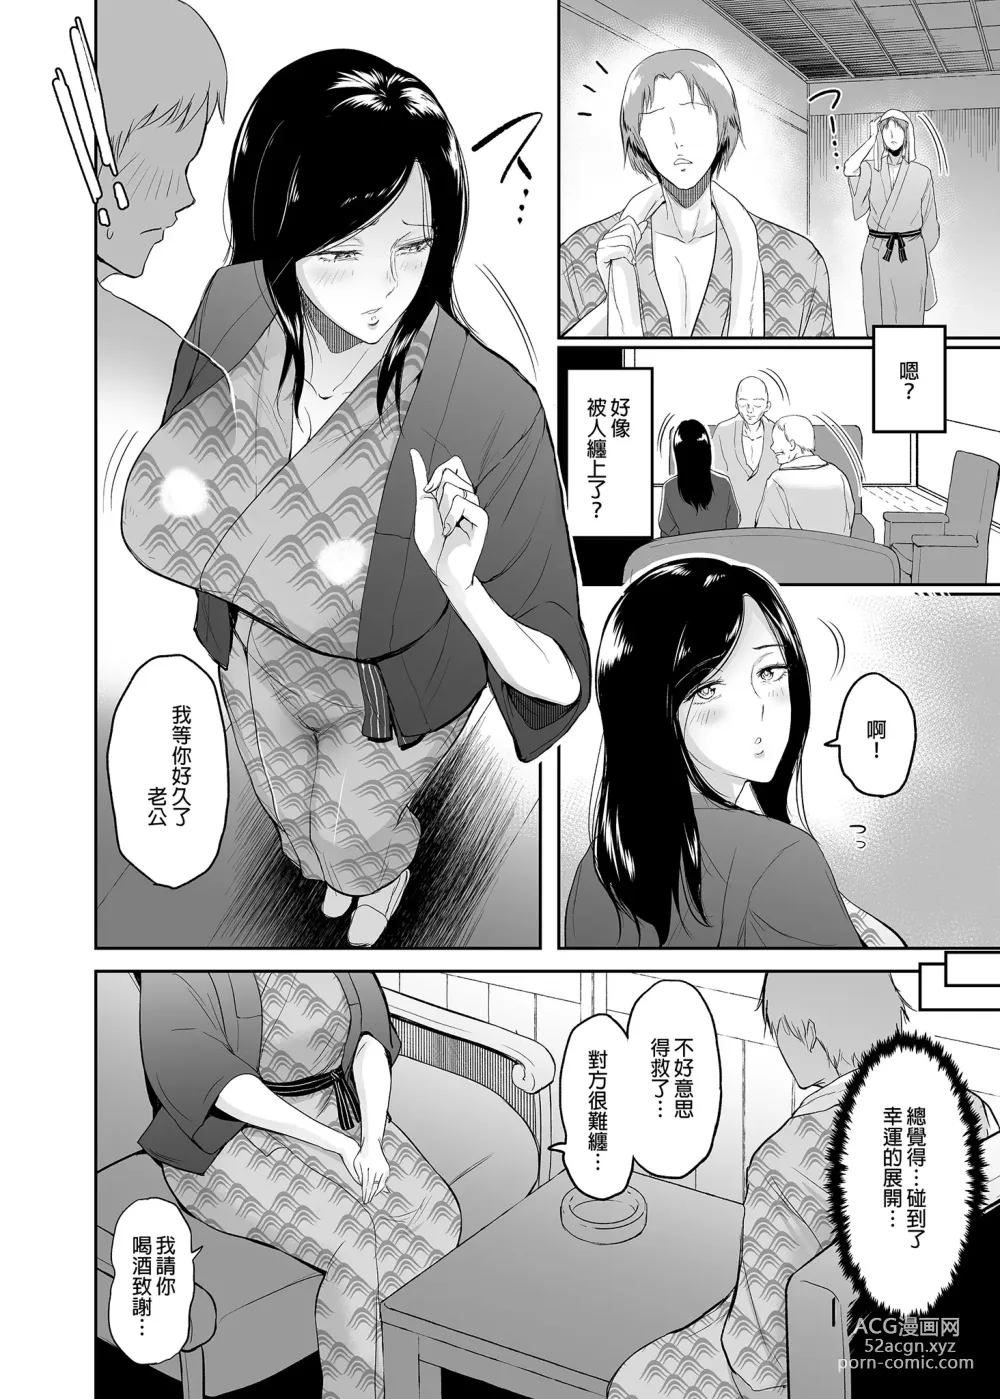 Page 7 of doujinshi マリエさんと温泉+マリエさんとお風呂場+処女を散らす部屋